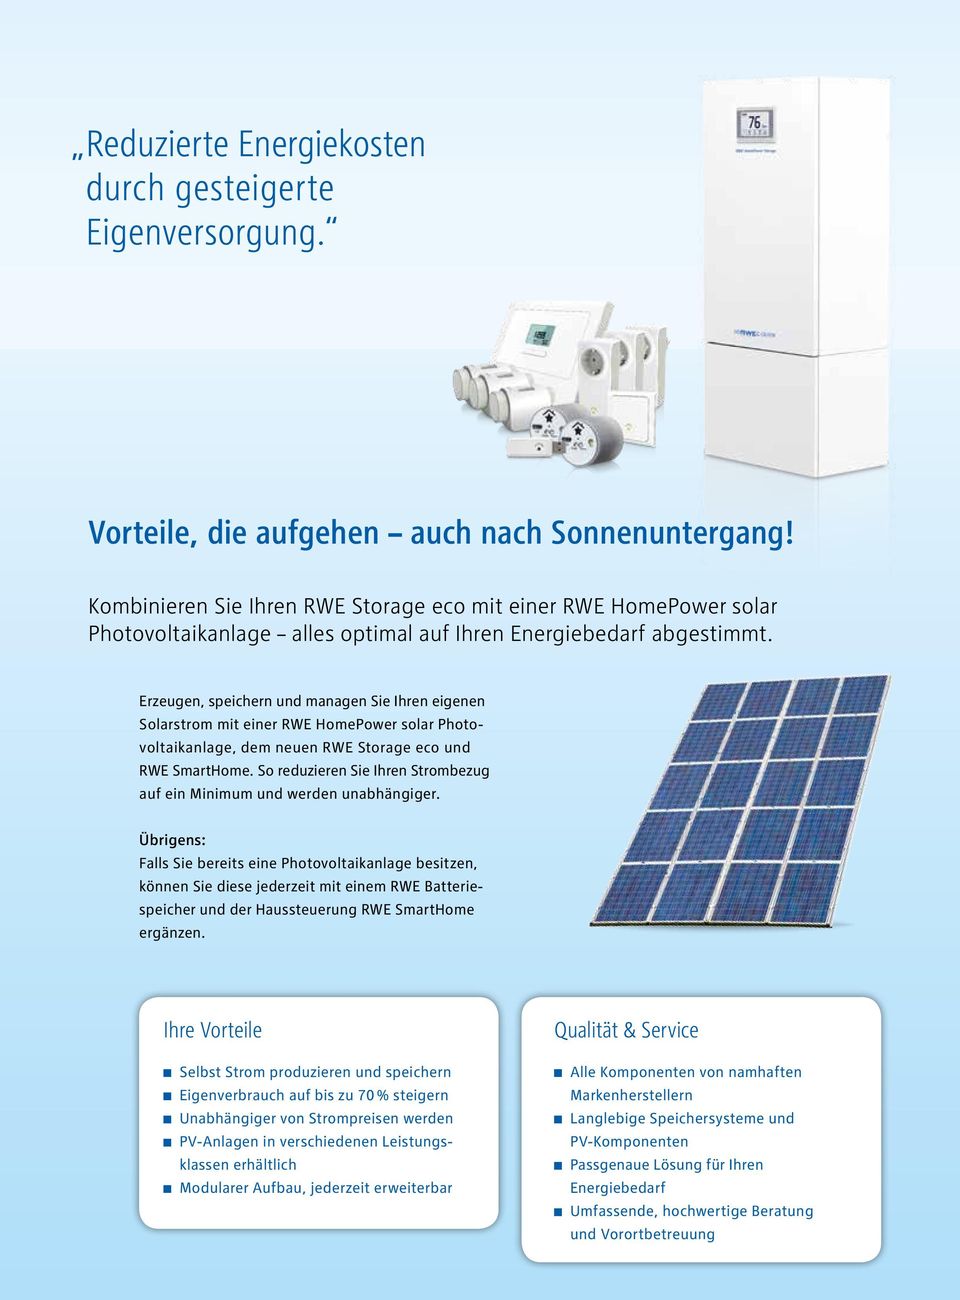 Erzeugen, speichern und managen Sie Ihren eigenen Solarstrom mit einer RWE HomePower solar Photovoltaikanlage, dem neuen RWE Storage eco und RWE SmartHome.